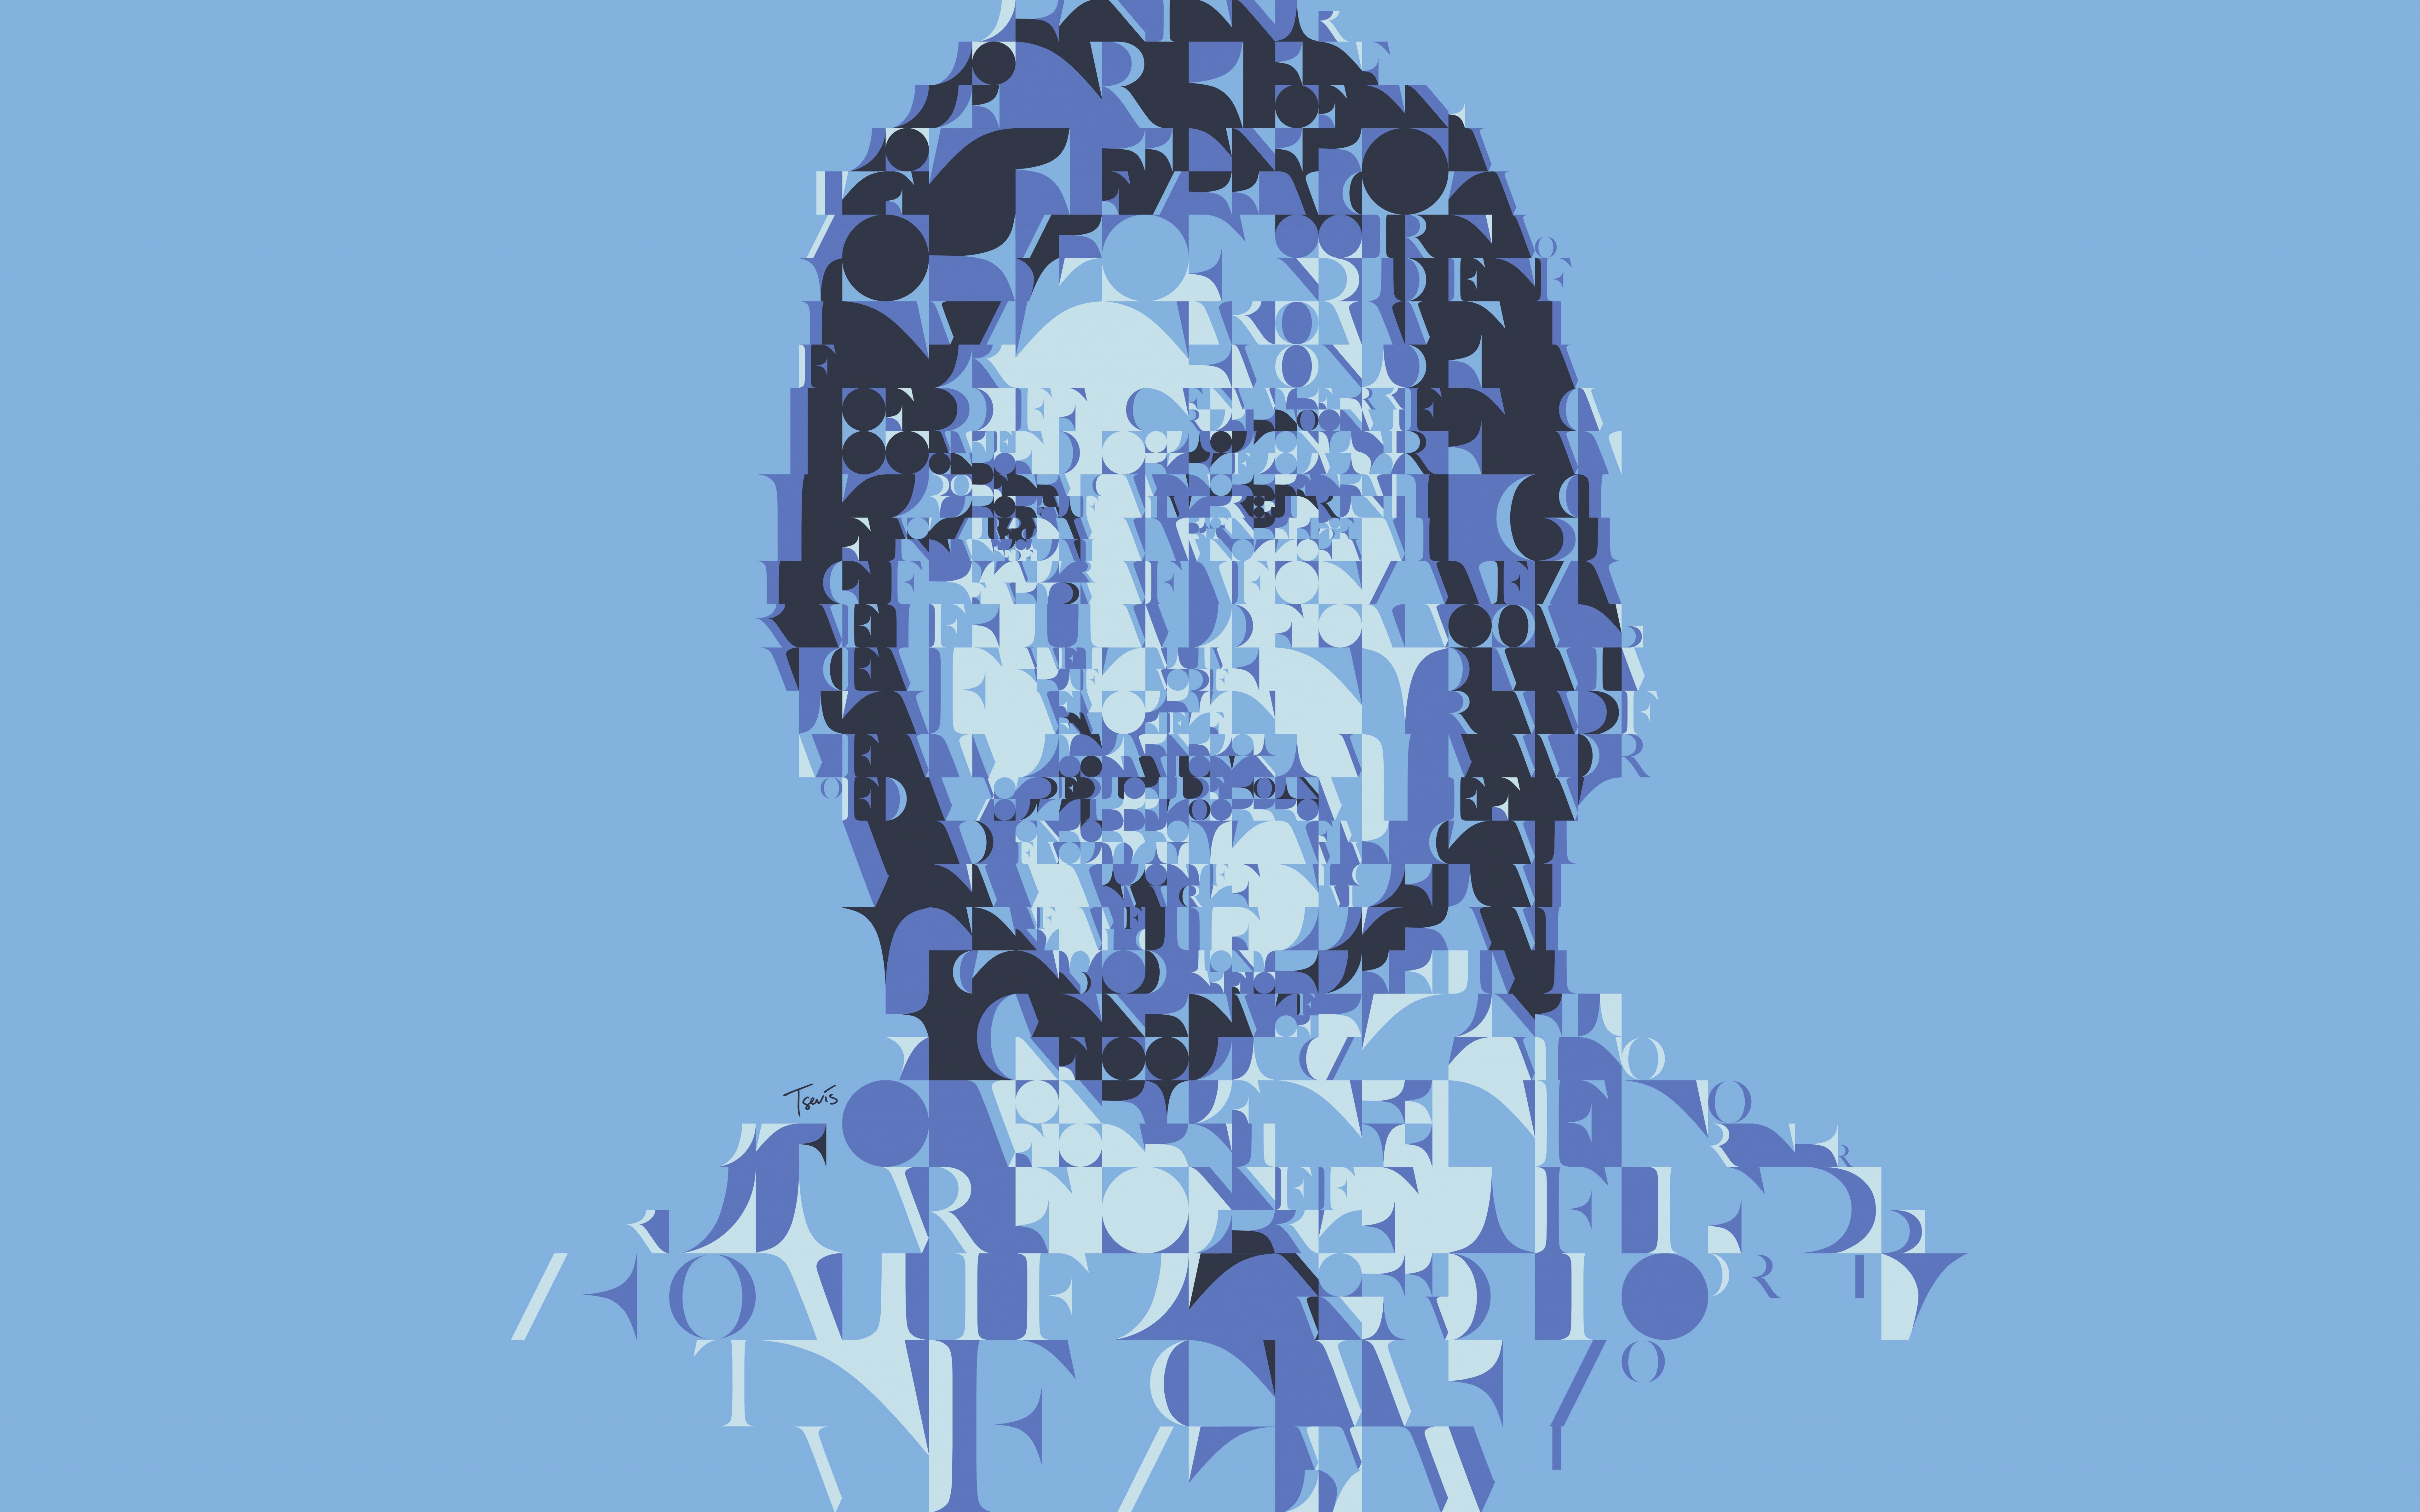 7680x4320 Steve Jobs Blue Face Art 8K Wallpaper, HD Artist 4K Wallpapers,  Images, Photos and Background - Wallpapers Den